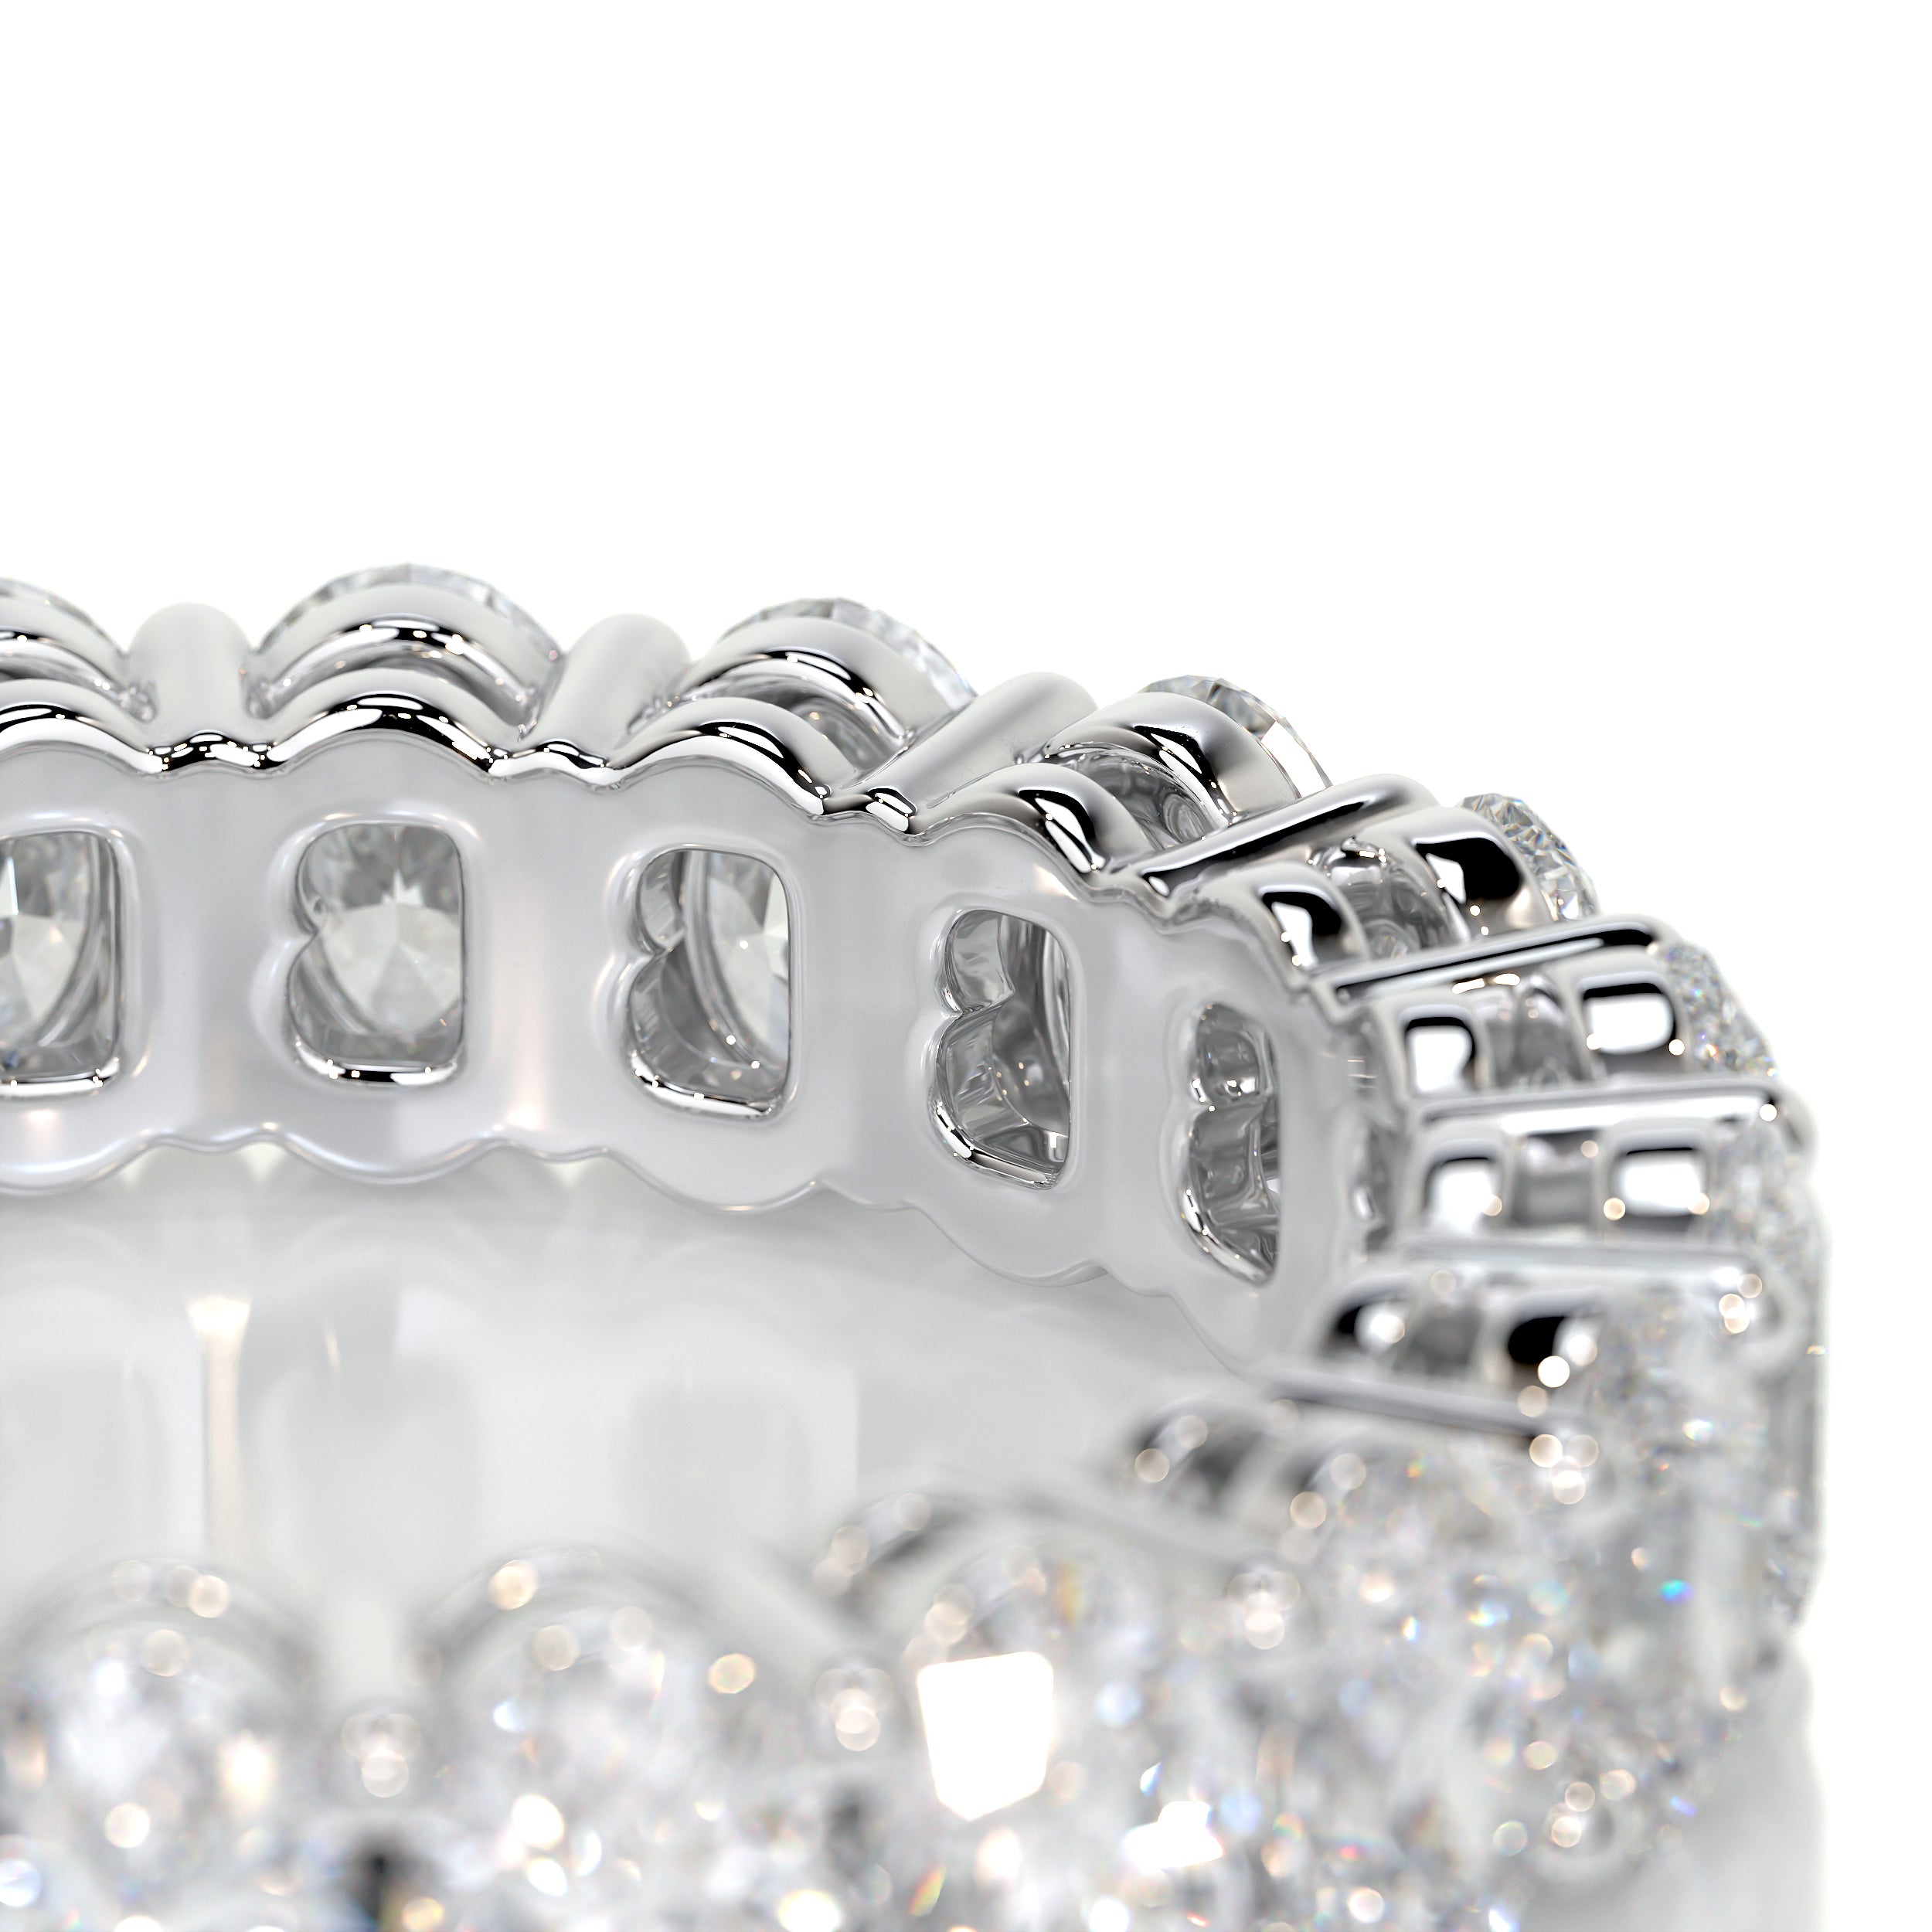 Julia Diamond Wedding Ring   (3.5 Carat) -18K White Gold